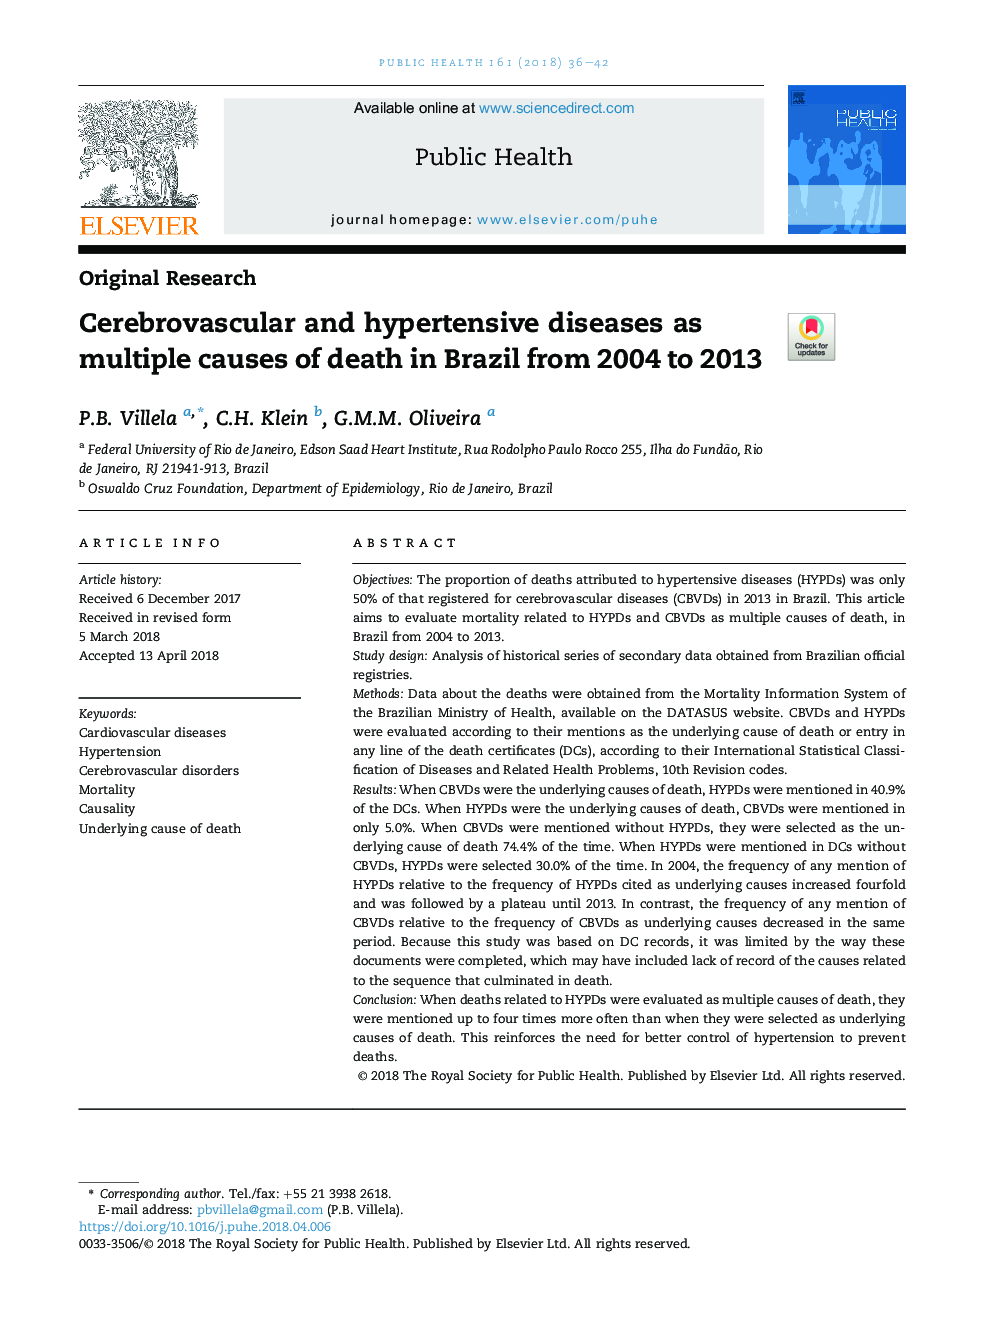 بیماری های مغزی و فشار خون بالا به عنوان علل متعدد مرگ در برزیل از 2004 تا 2013 